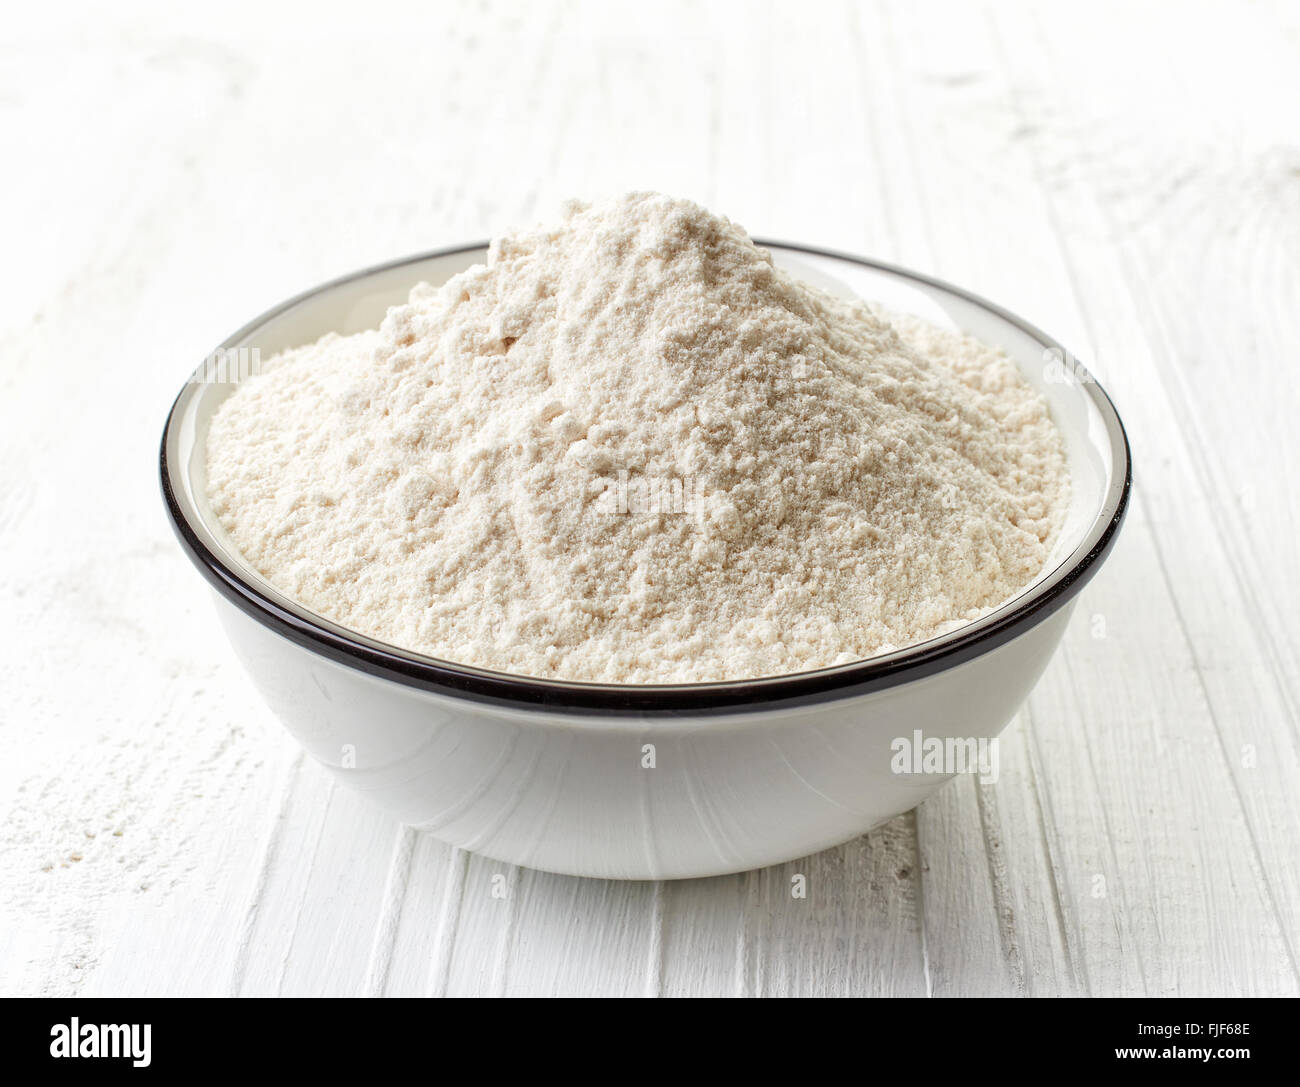 Bowl of white flour on white wooden table Stock Photo